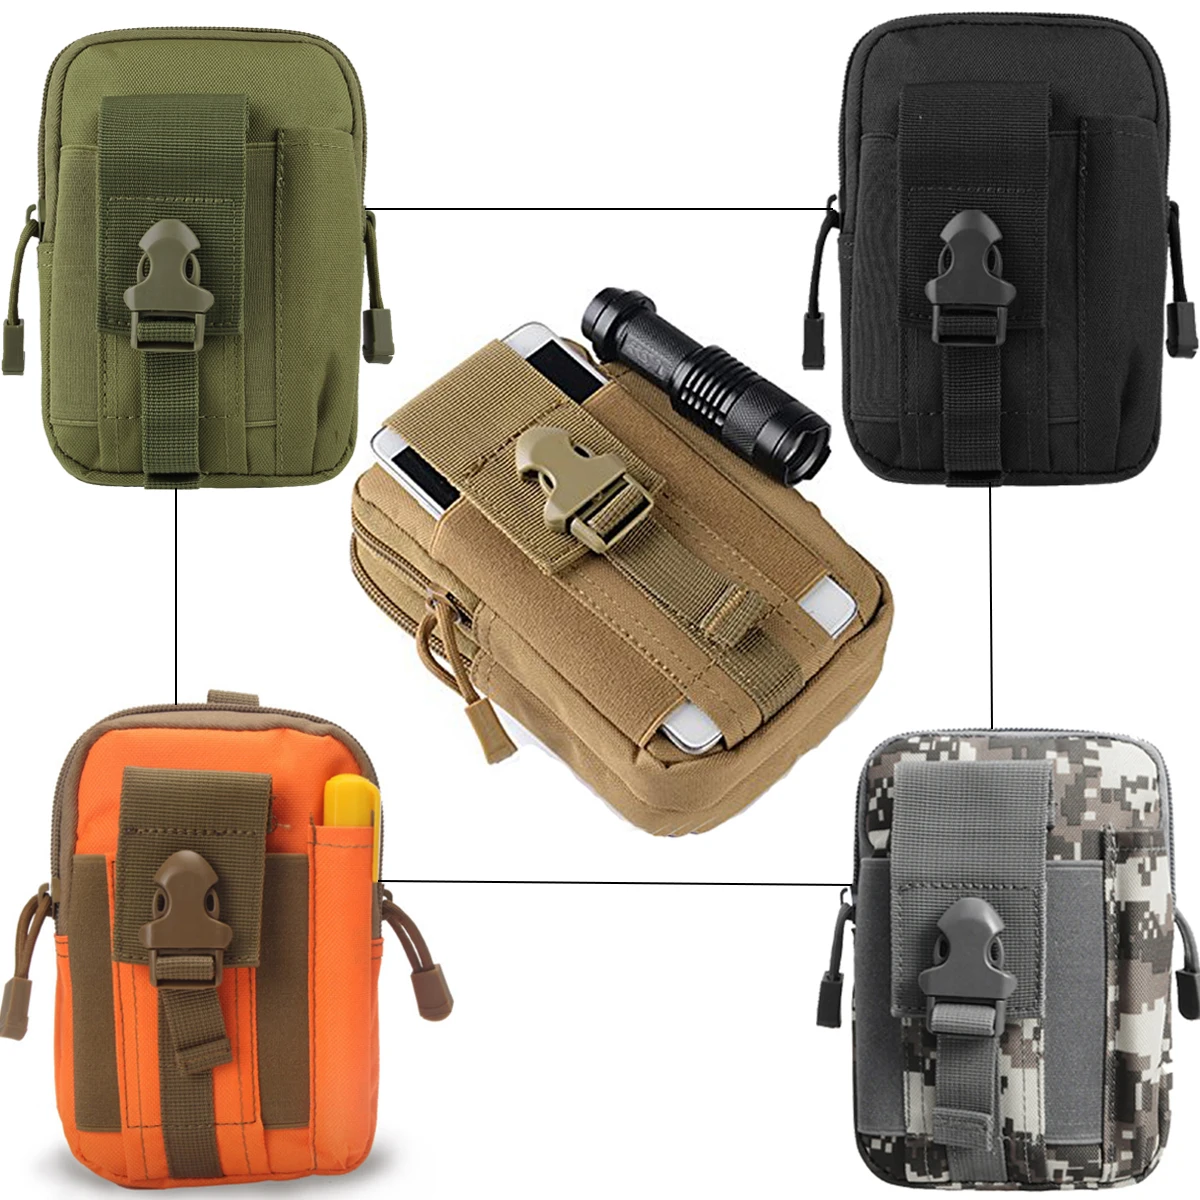 

Военная Сумка Molle, тактическая поясная сумка, уличная спортивная водонепроницаемая сумка для телефона, мужская повседневная сумка для повс...